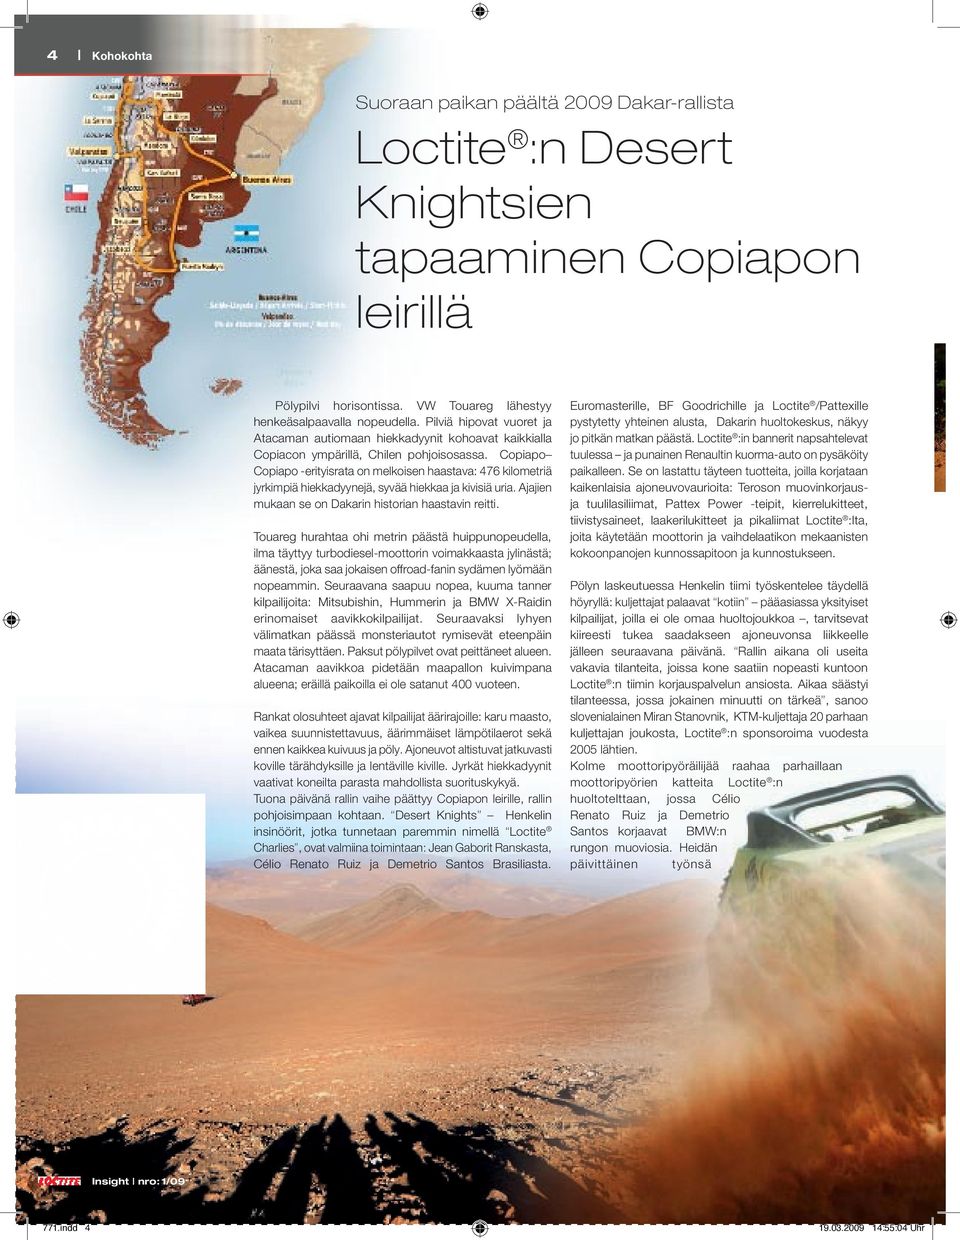 Copiapo Copiapo -erityisrata on melkoisen haastava: 476 kilometriä jyrkimpiä hiekkadyynejä, syvää hiekkaa ja kivisiä uria. Ajajien mukaan se on Dakarin historian haastavin reitti.